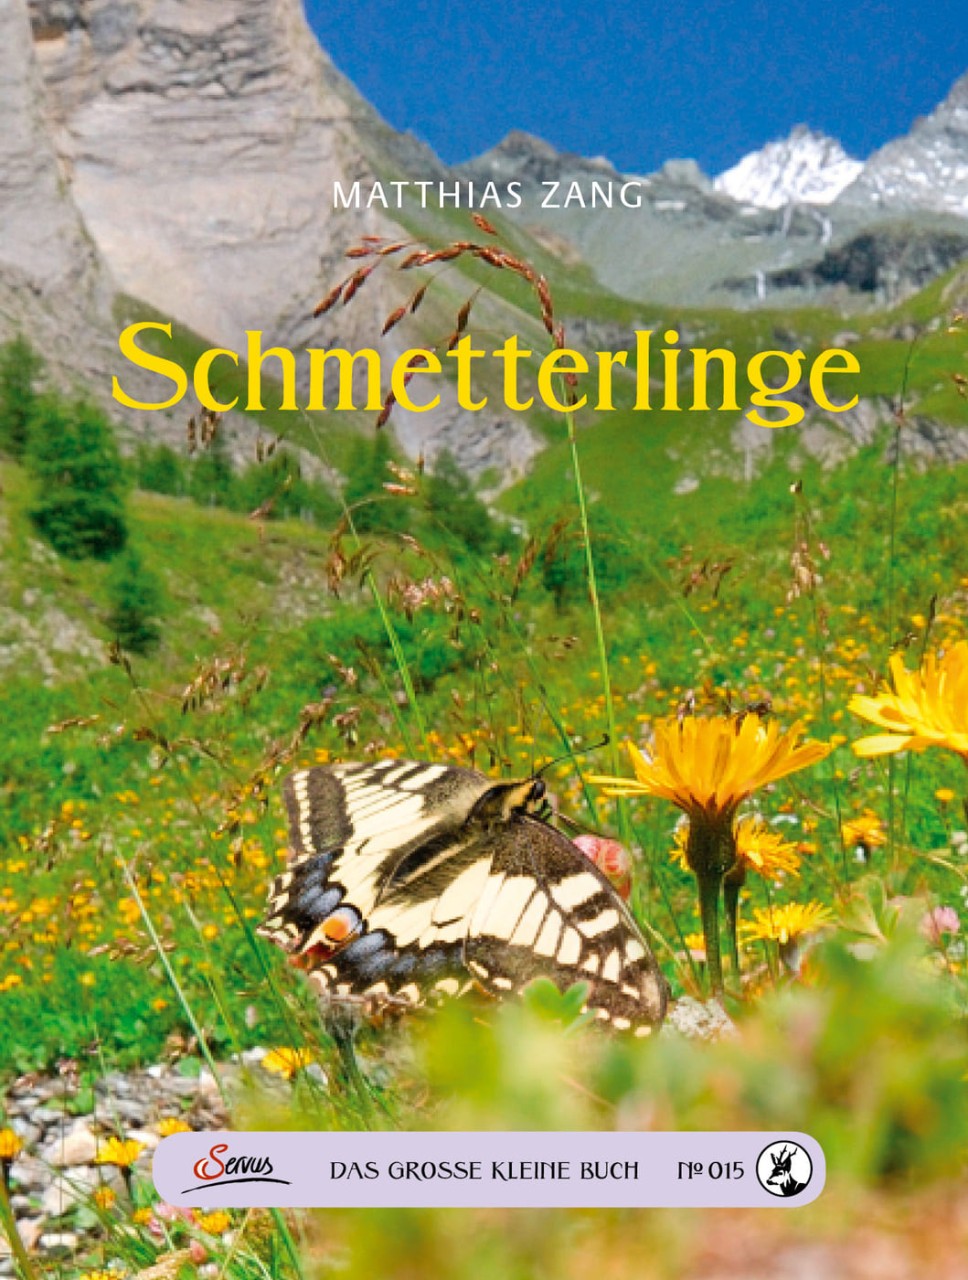 Das große kleine Buch: Schmetterlinge von Servus Verlag